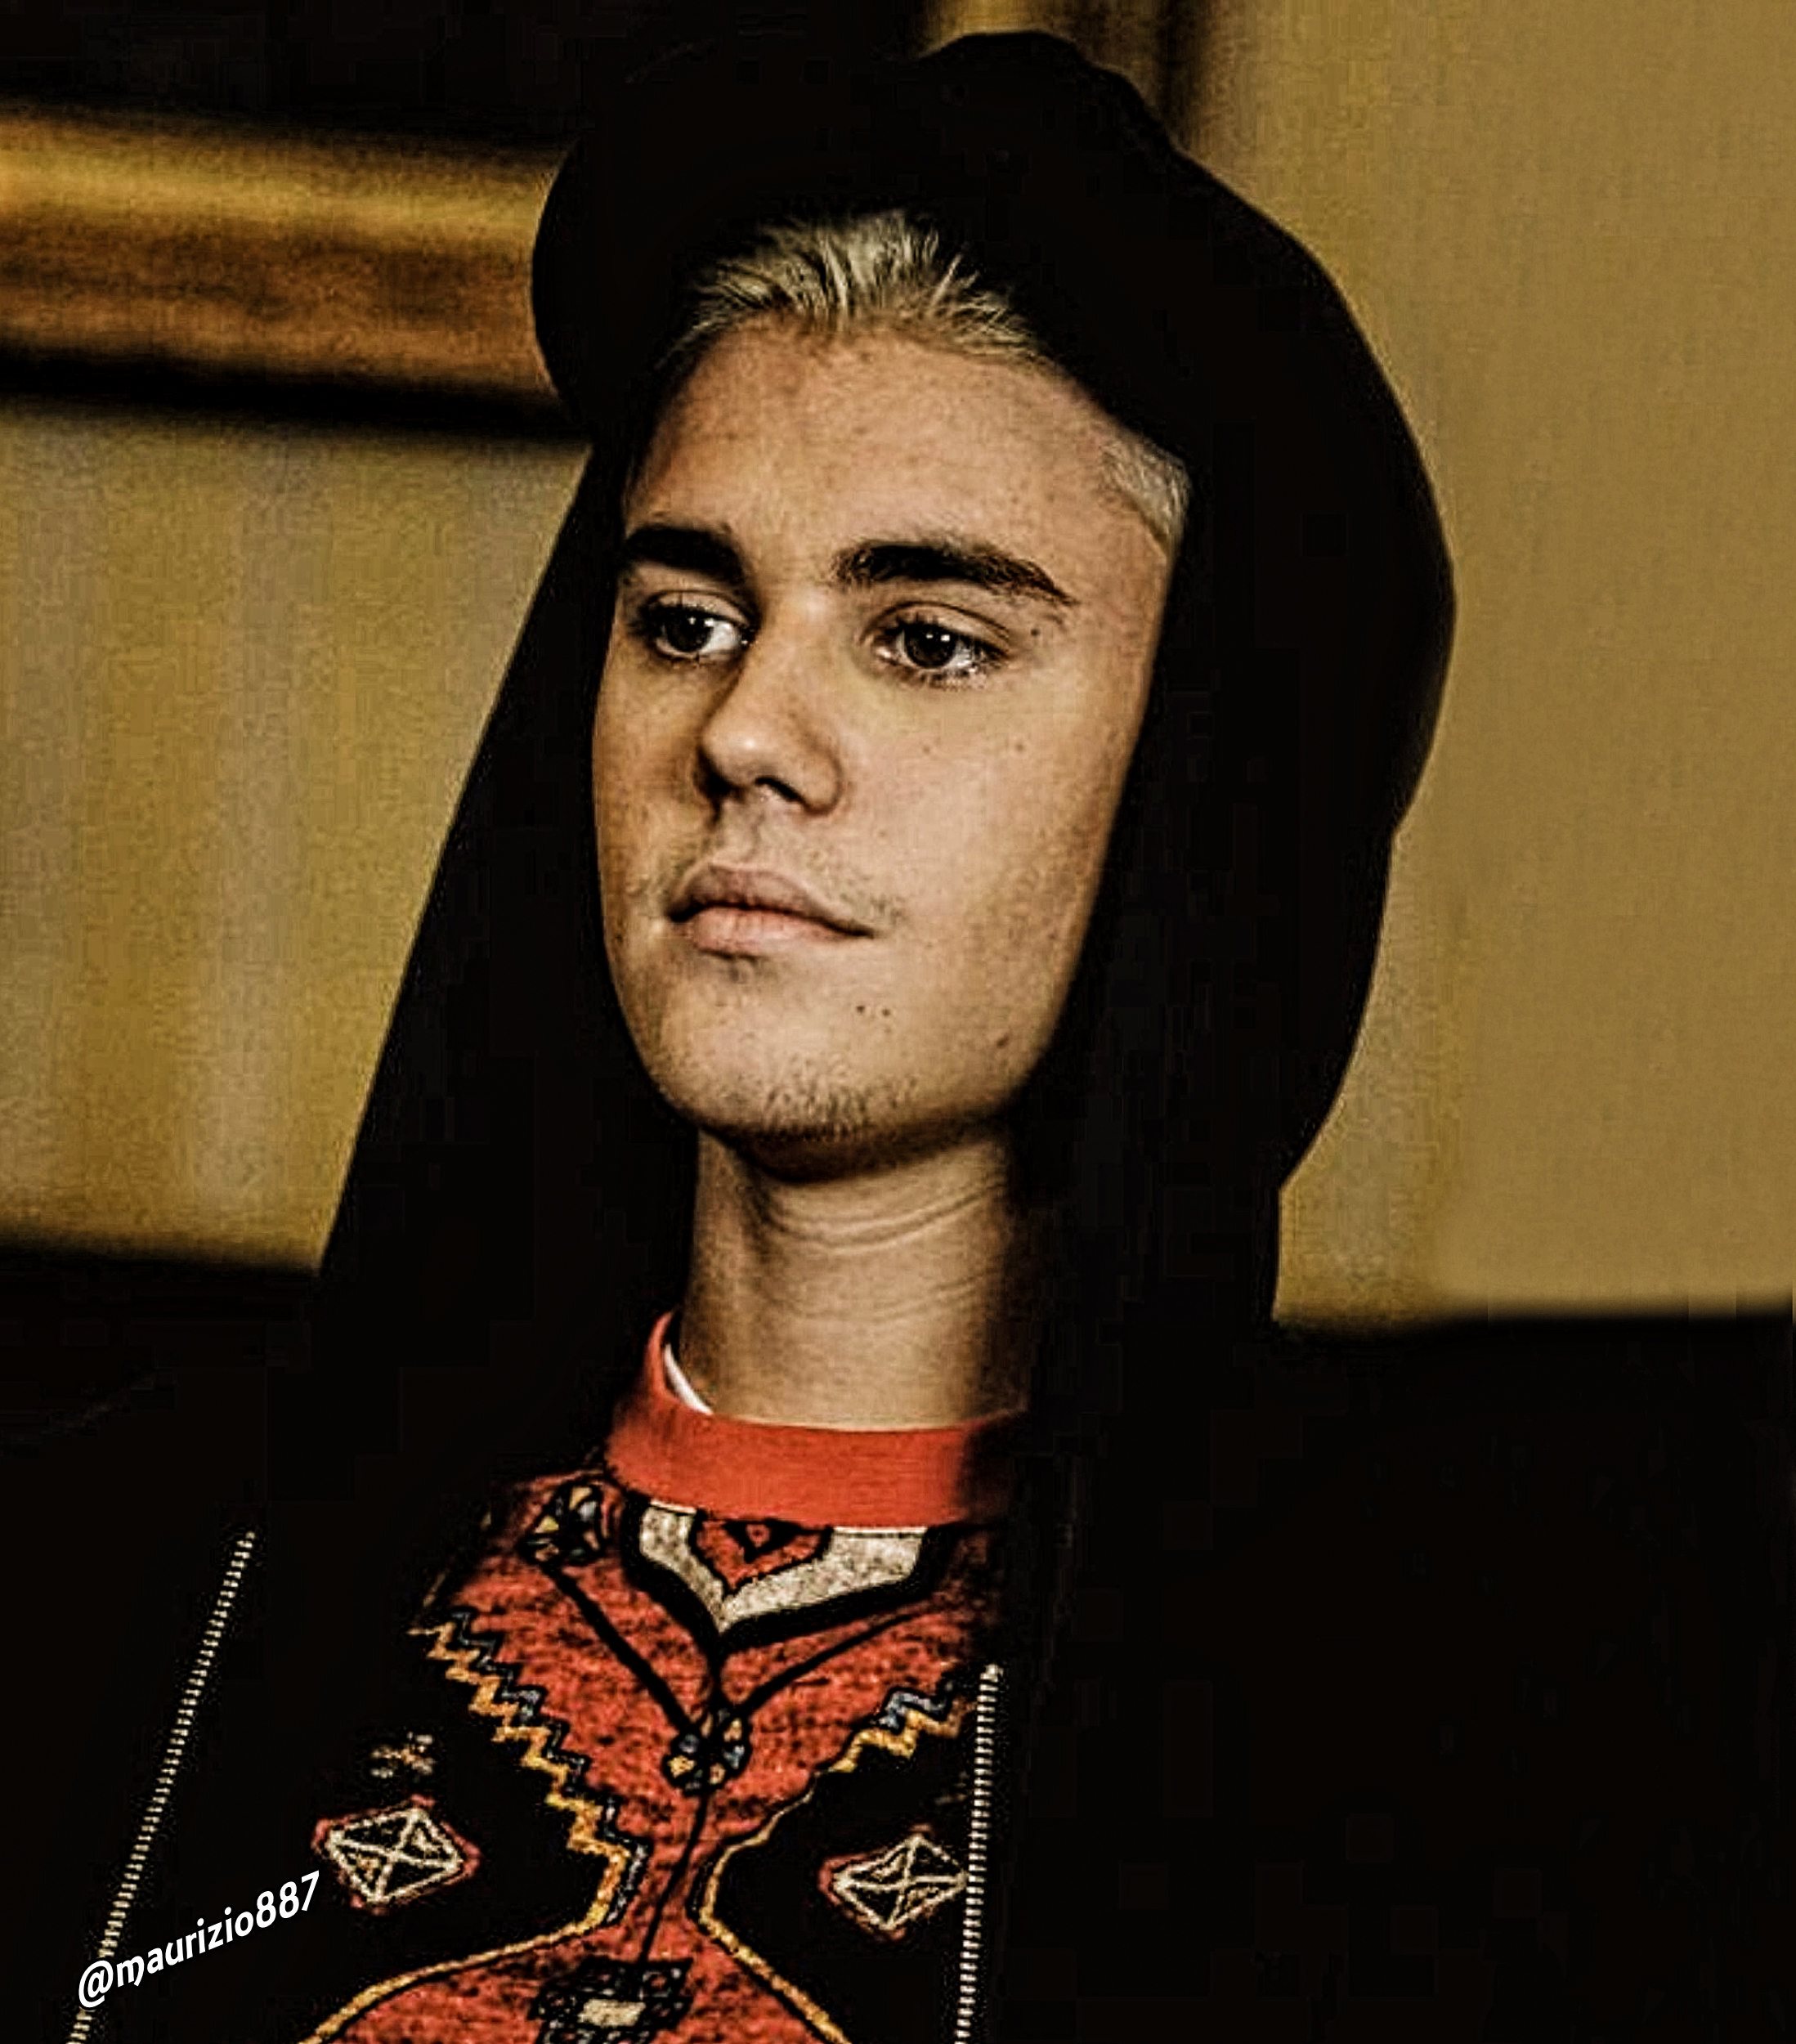 justin bieber, 2015 - Justin Bieber Photo (39033299) - Fanpop